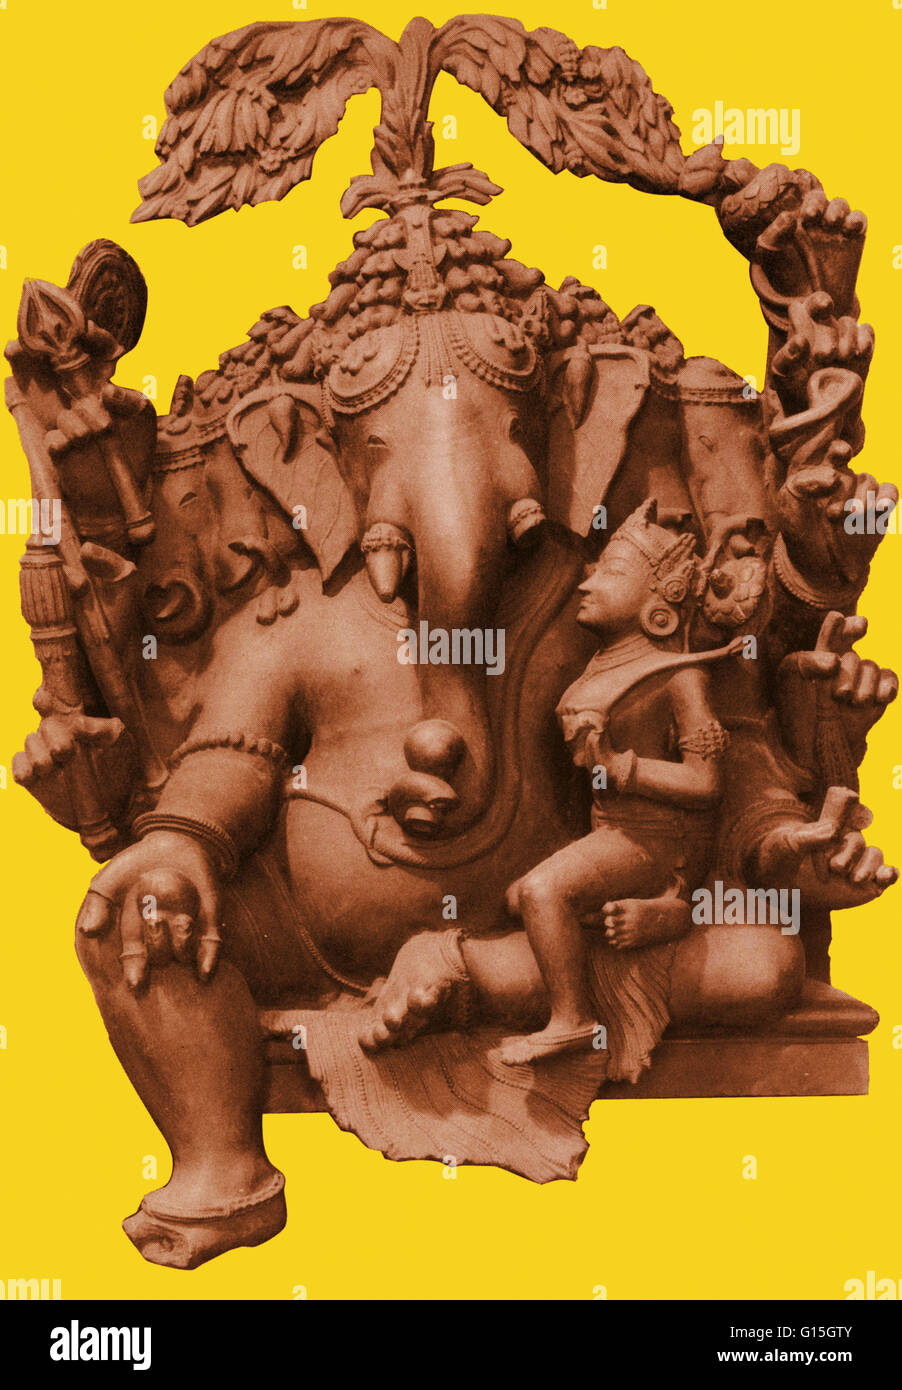 Ganesha, fils de Shiva et Parvati. Matériel : le schiste. Emplacement : l'Orissa. 13e A.D. Ganesha est le dieu indien de la sagesse, la bonne fortune et la prudence. Il est le fils de Shiva et Parvati. Selon la tradition hindoue, tandis que Shiva était parti en guerre, Parvati mis Banque D'Images